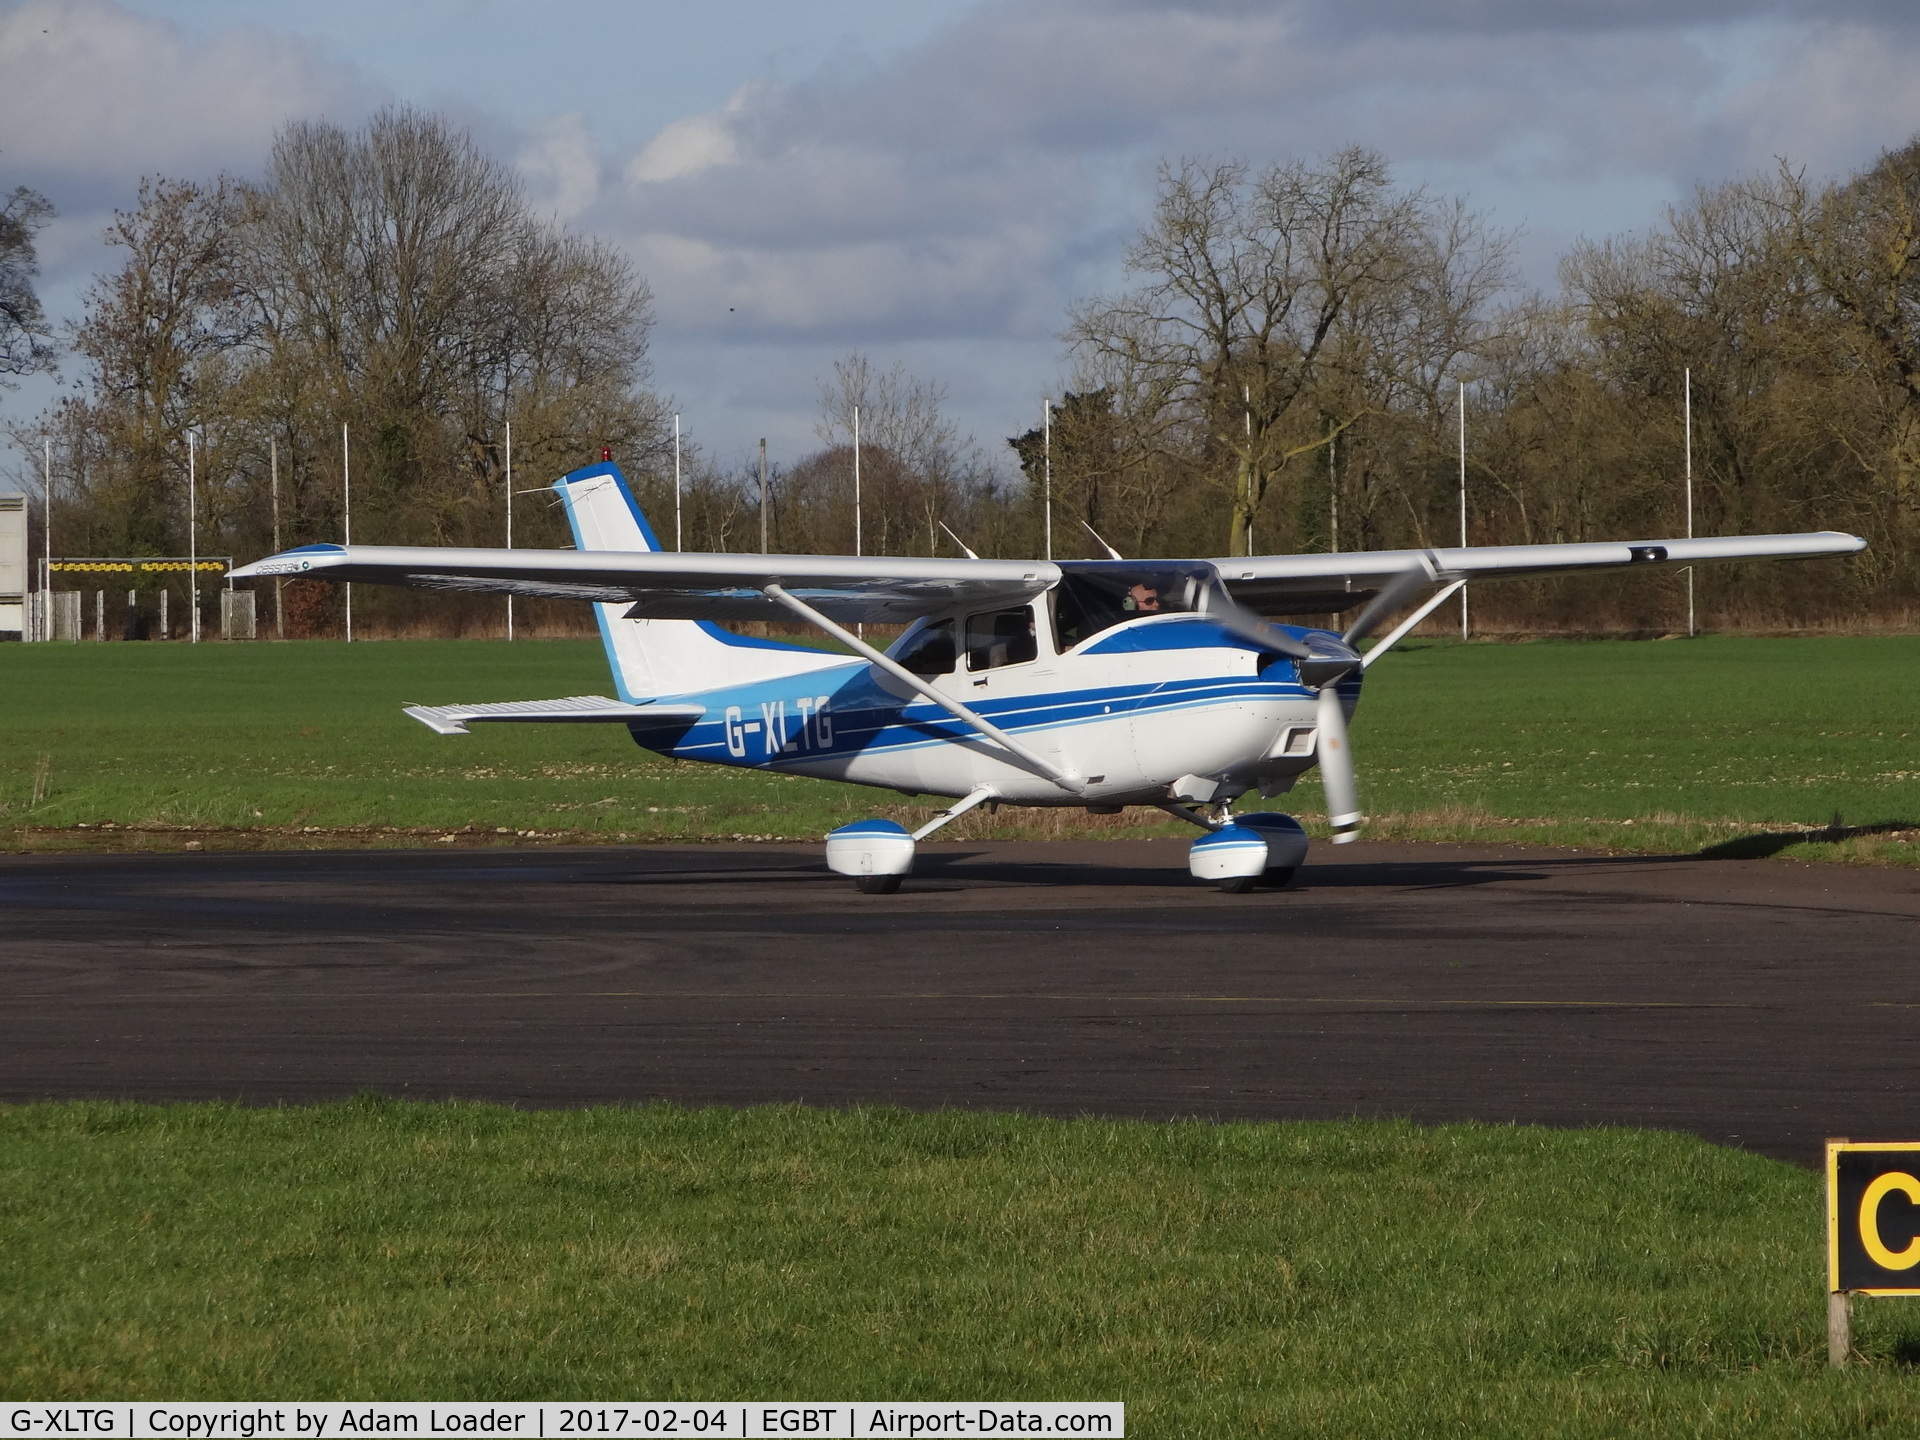 G-XLTG, 1998 Cessna 182S Skylane C/N 182-80234, G-XLTG